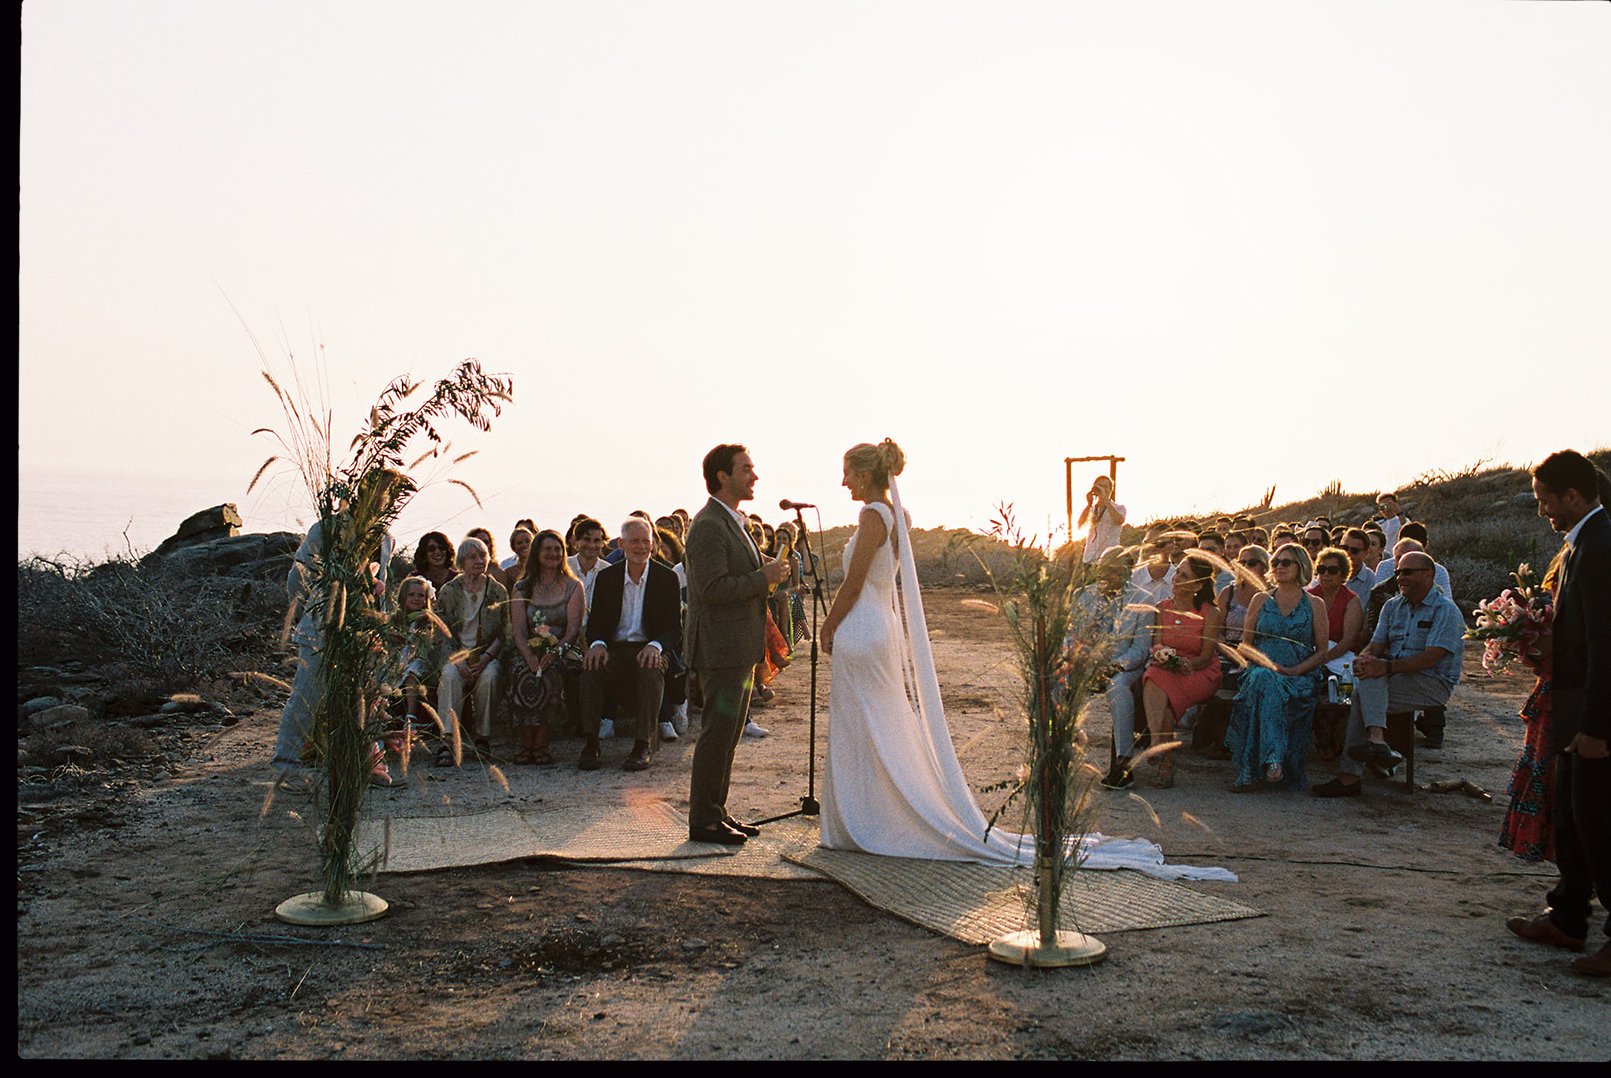 Best-Todos-Santos-Wedding-Photographer-Baja-El Mirador-La Bohemia-35mm-Film-Austin-Mexico-131.jpg